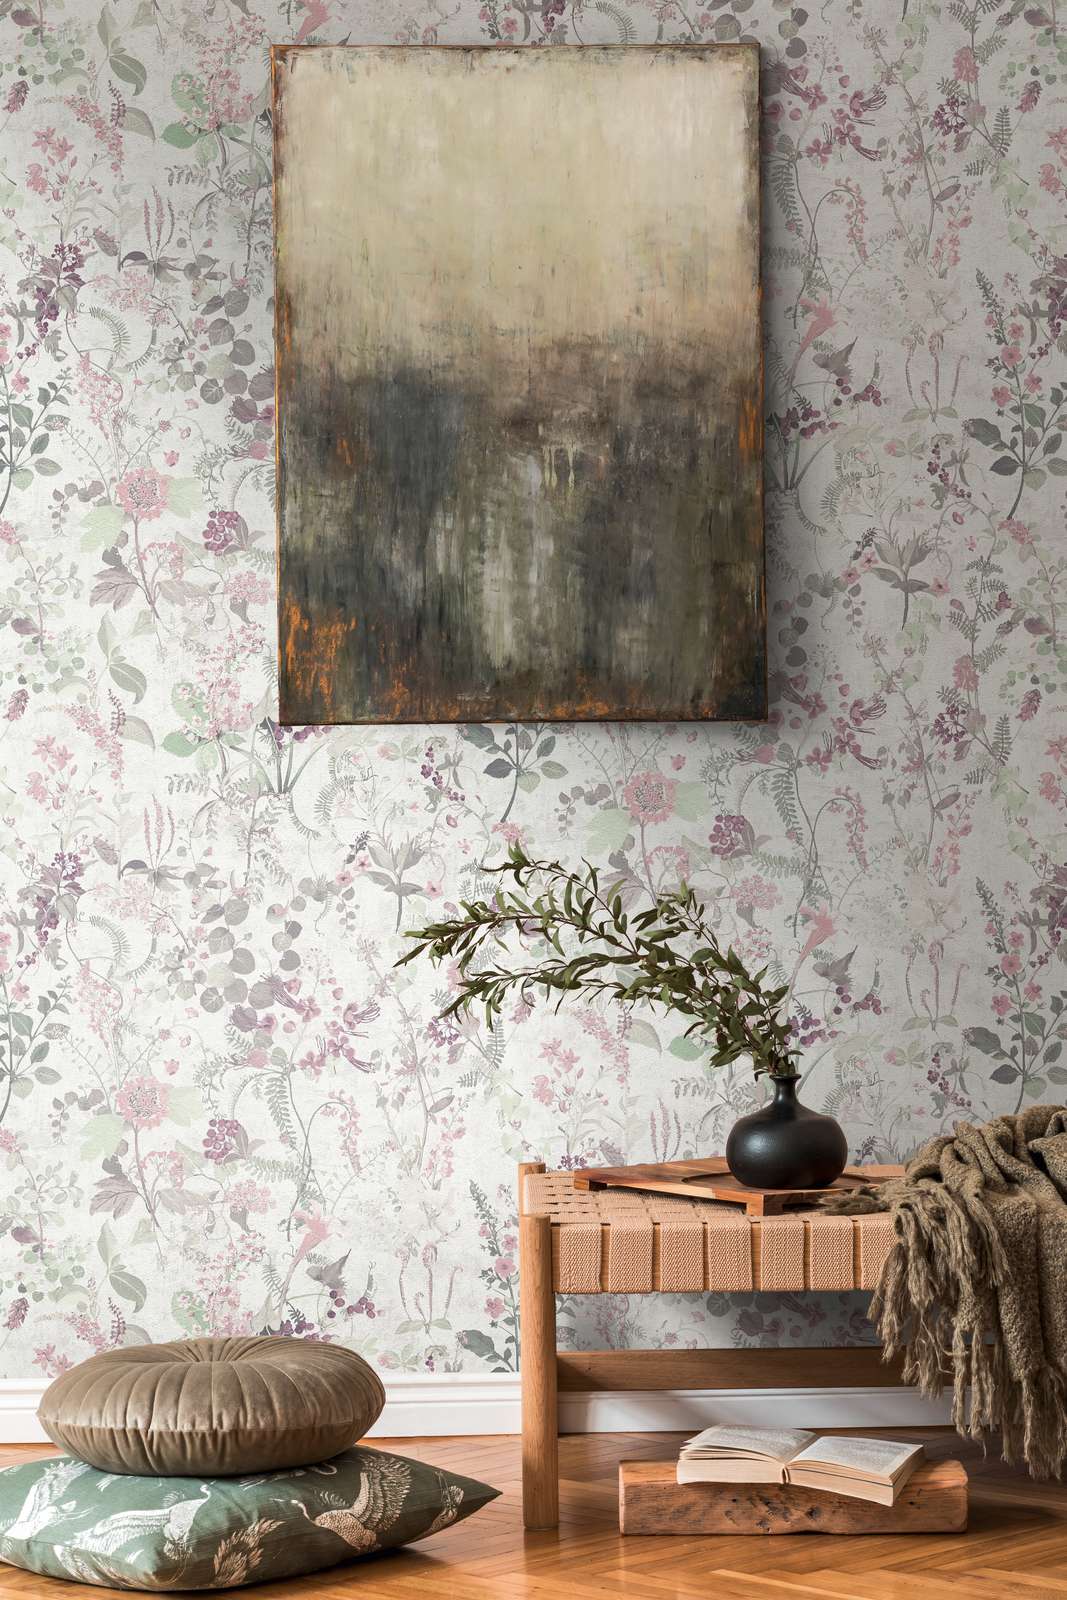             Papier peint naturel avec motifs floraux - gris, vert, rose
        